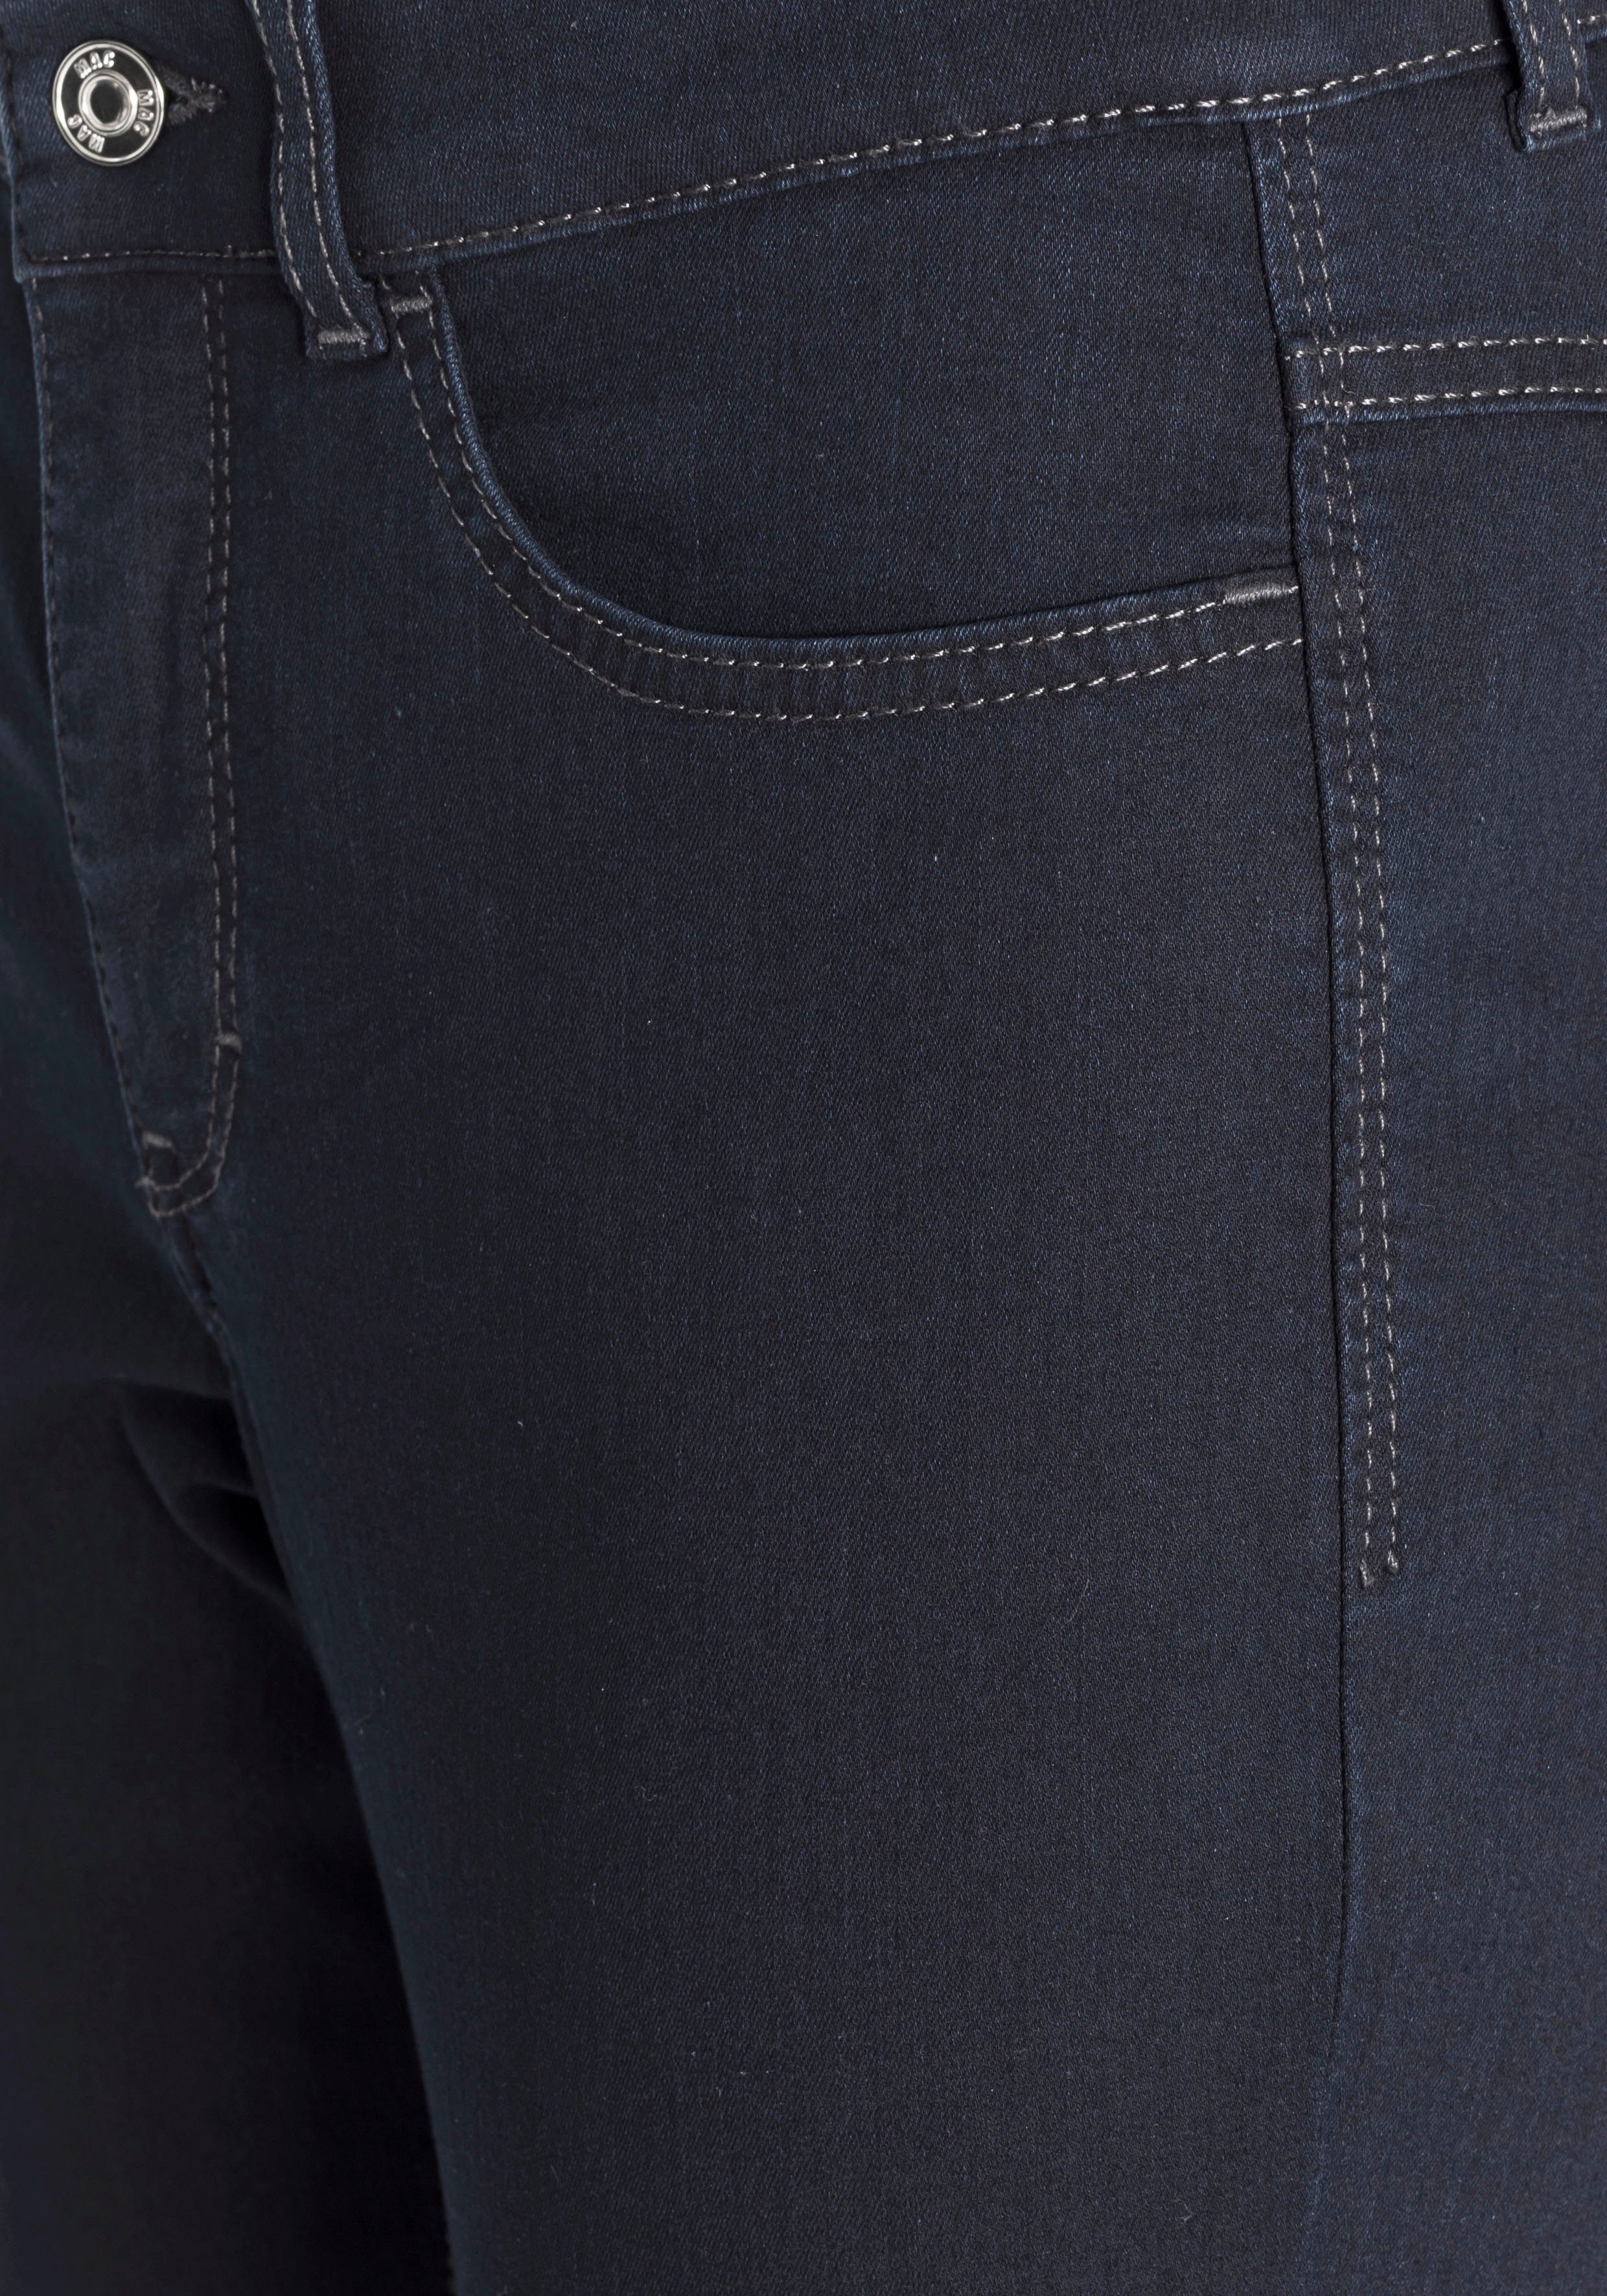 ganzen bequem sitzt Tag MAC den Skinny-fit-Jeans Power-Stretch dark rinsed blue Hiperstretch-Skinny Qualität